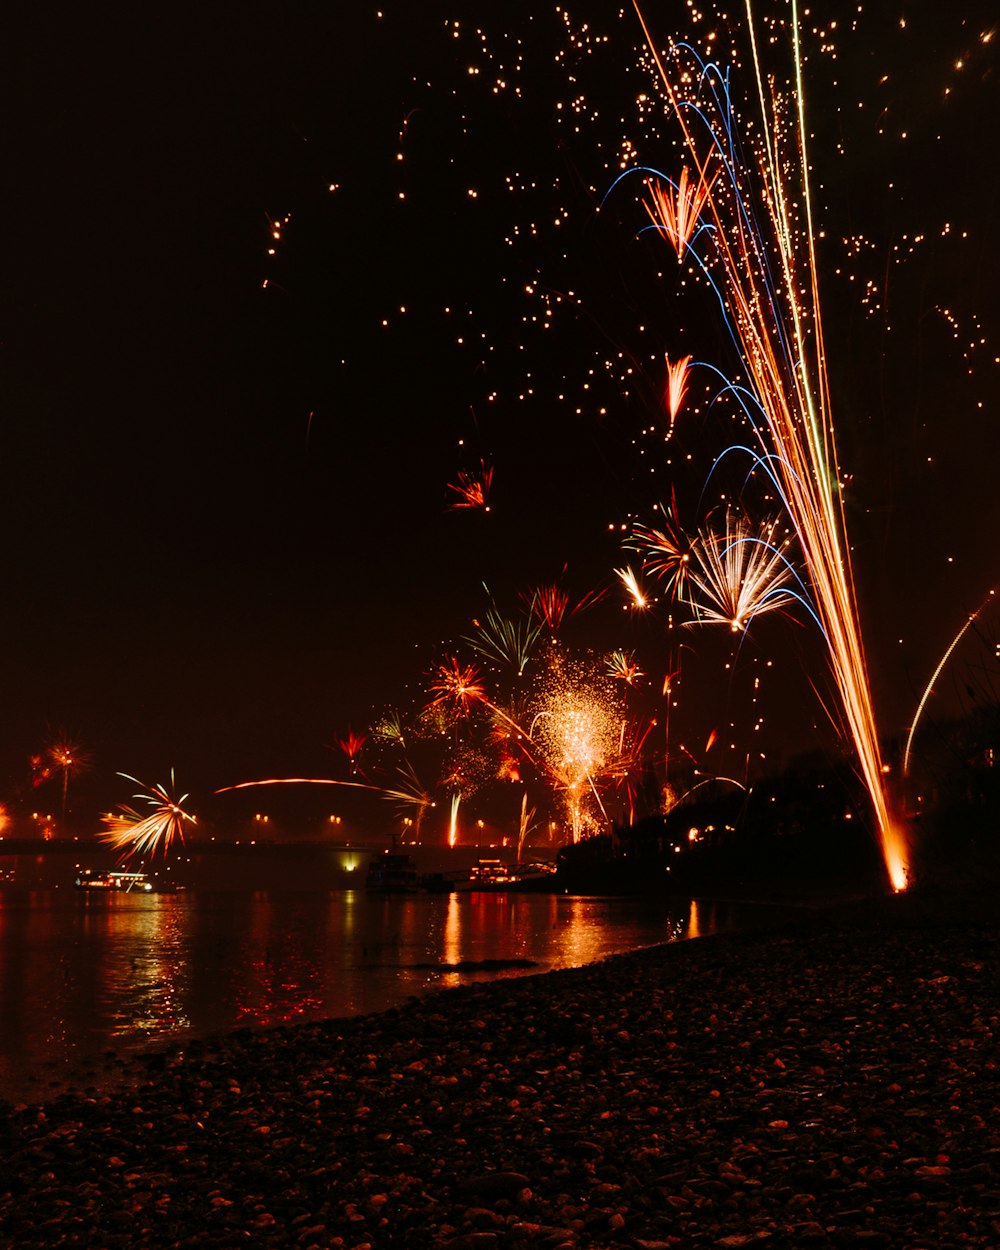 Fotografia time-lapse dei fuochi d'artificio che scoppiano nel cielo durante la notte